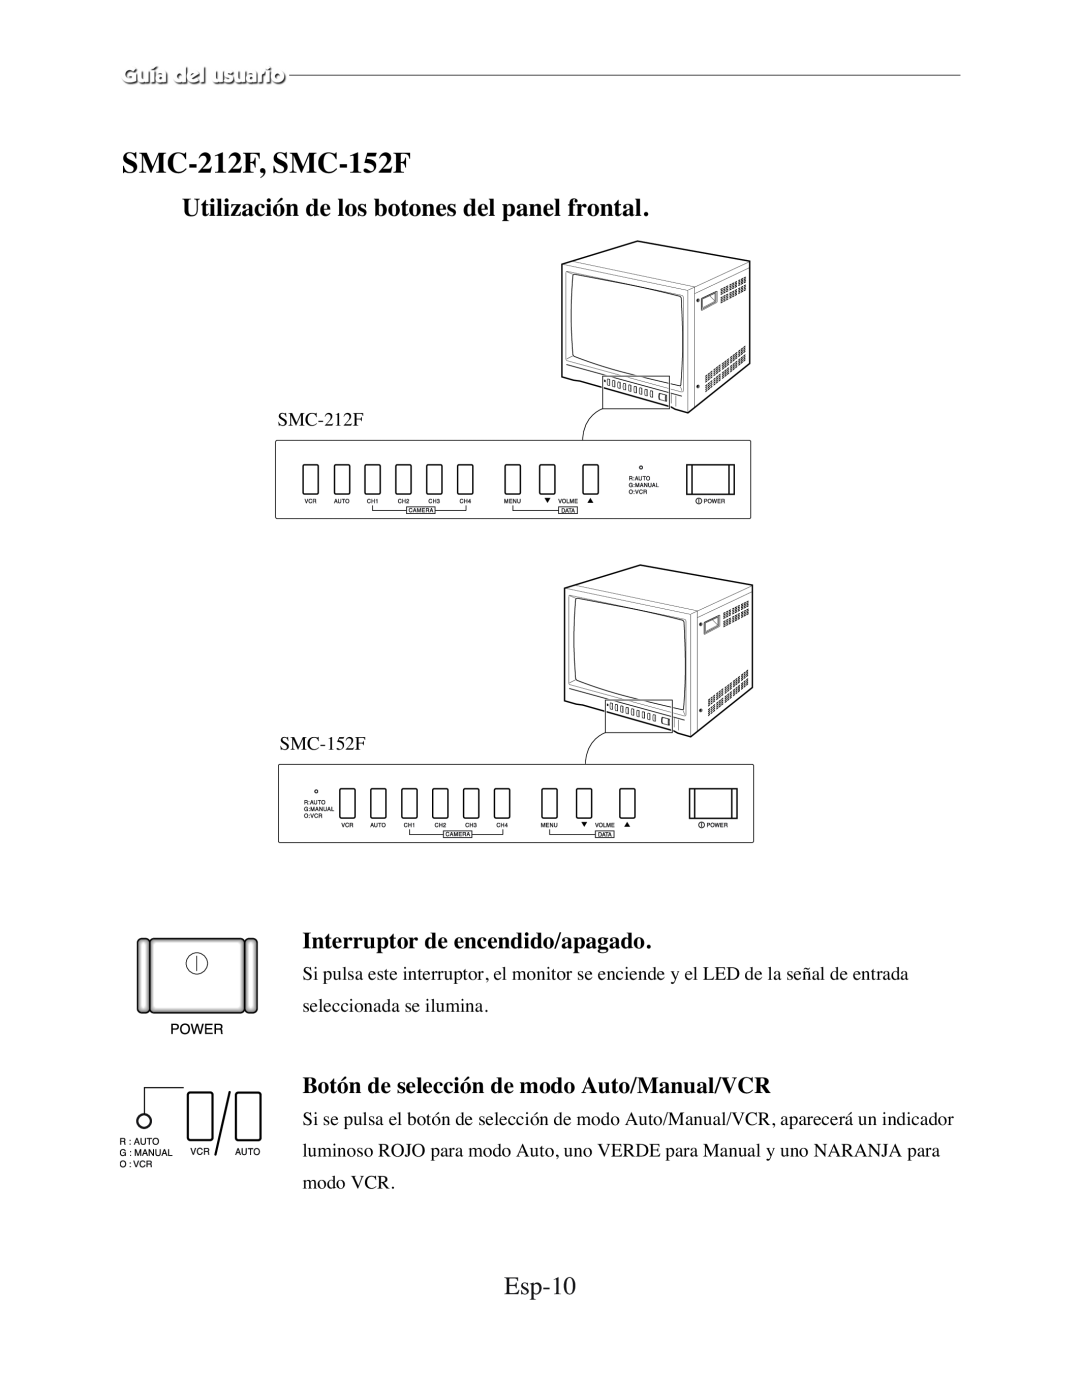 Samsung SMC-210FPV, SMC-152FP manual Esp-10, Interruptor de encendido/apagado, Botón de selección de modo Auto/Manual/VCR 